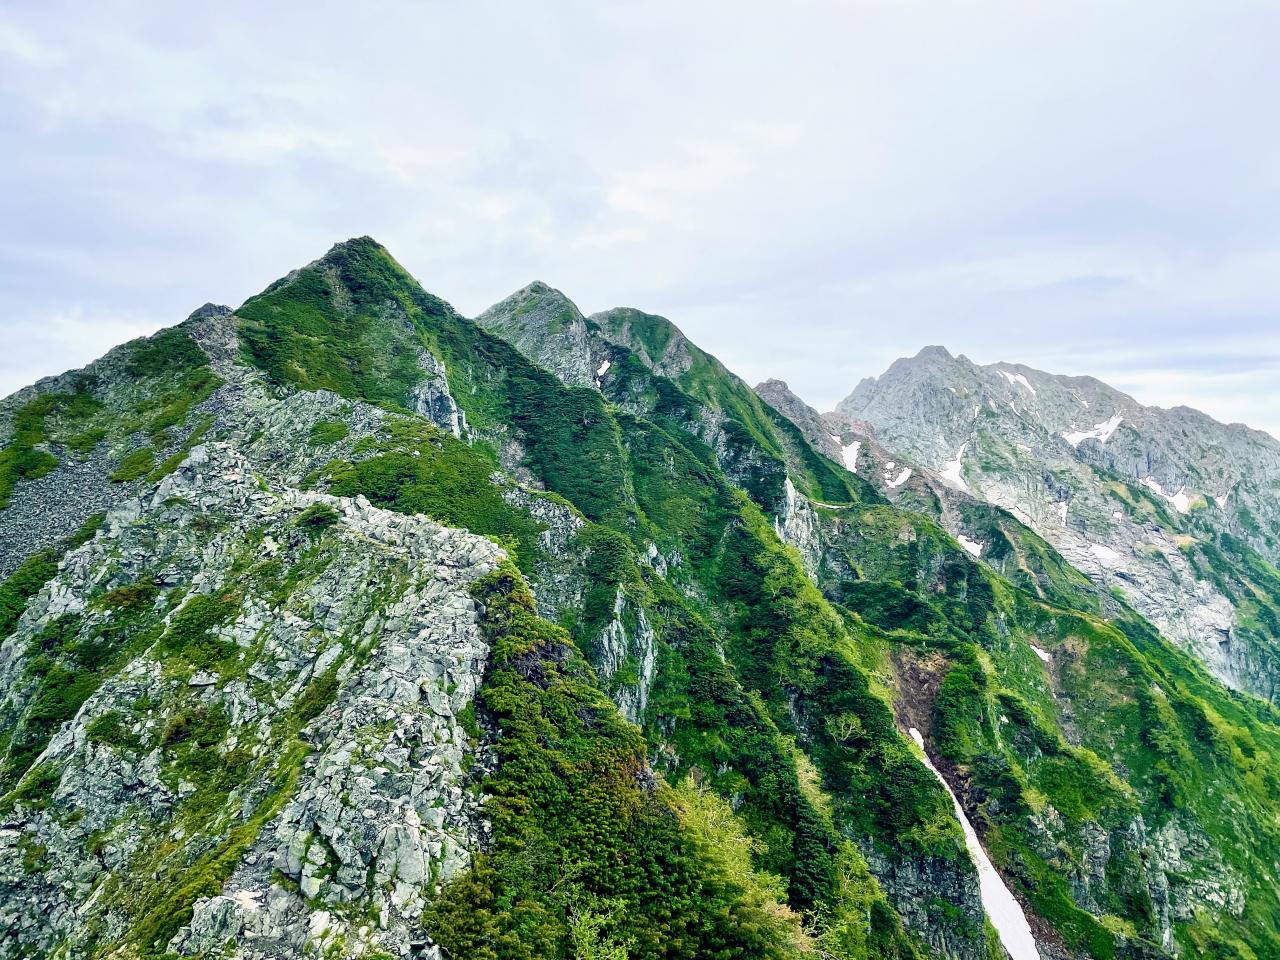 ロープウェイを利用して絶景登山 日本アルプス 八ヶ岳を登ろう 今 おすすめの山 Yamakei Online